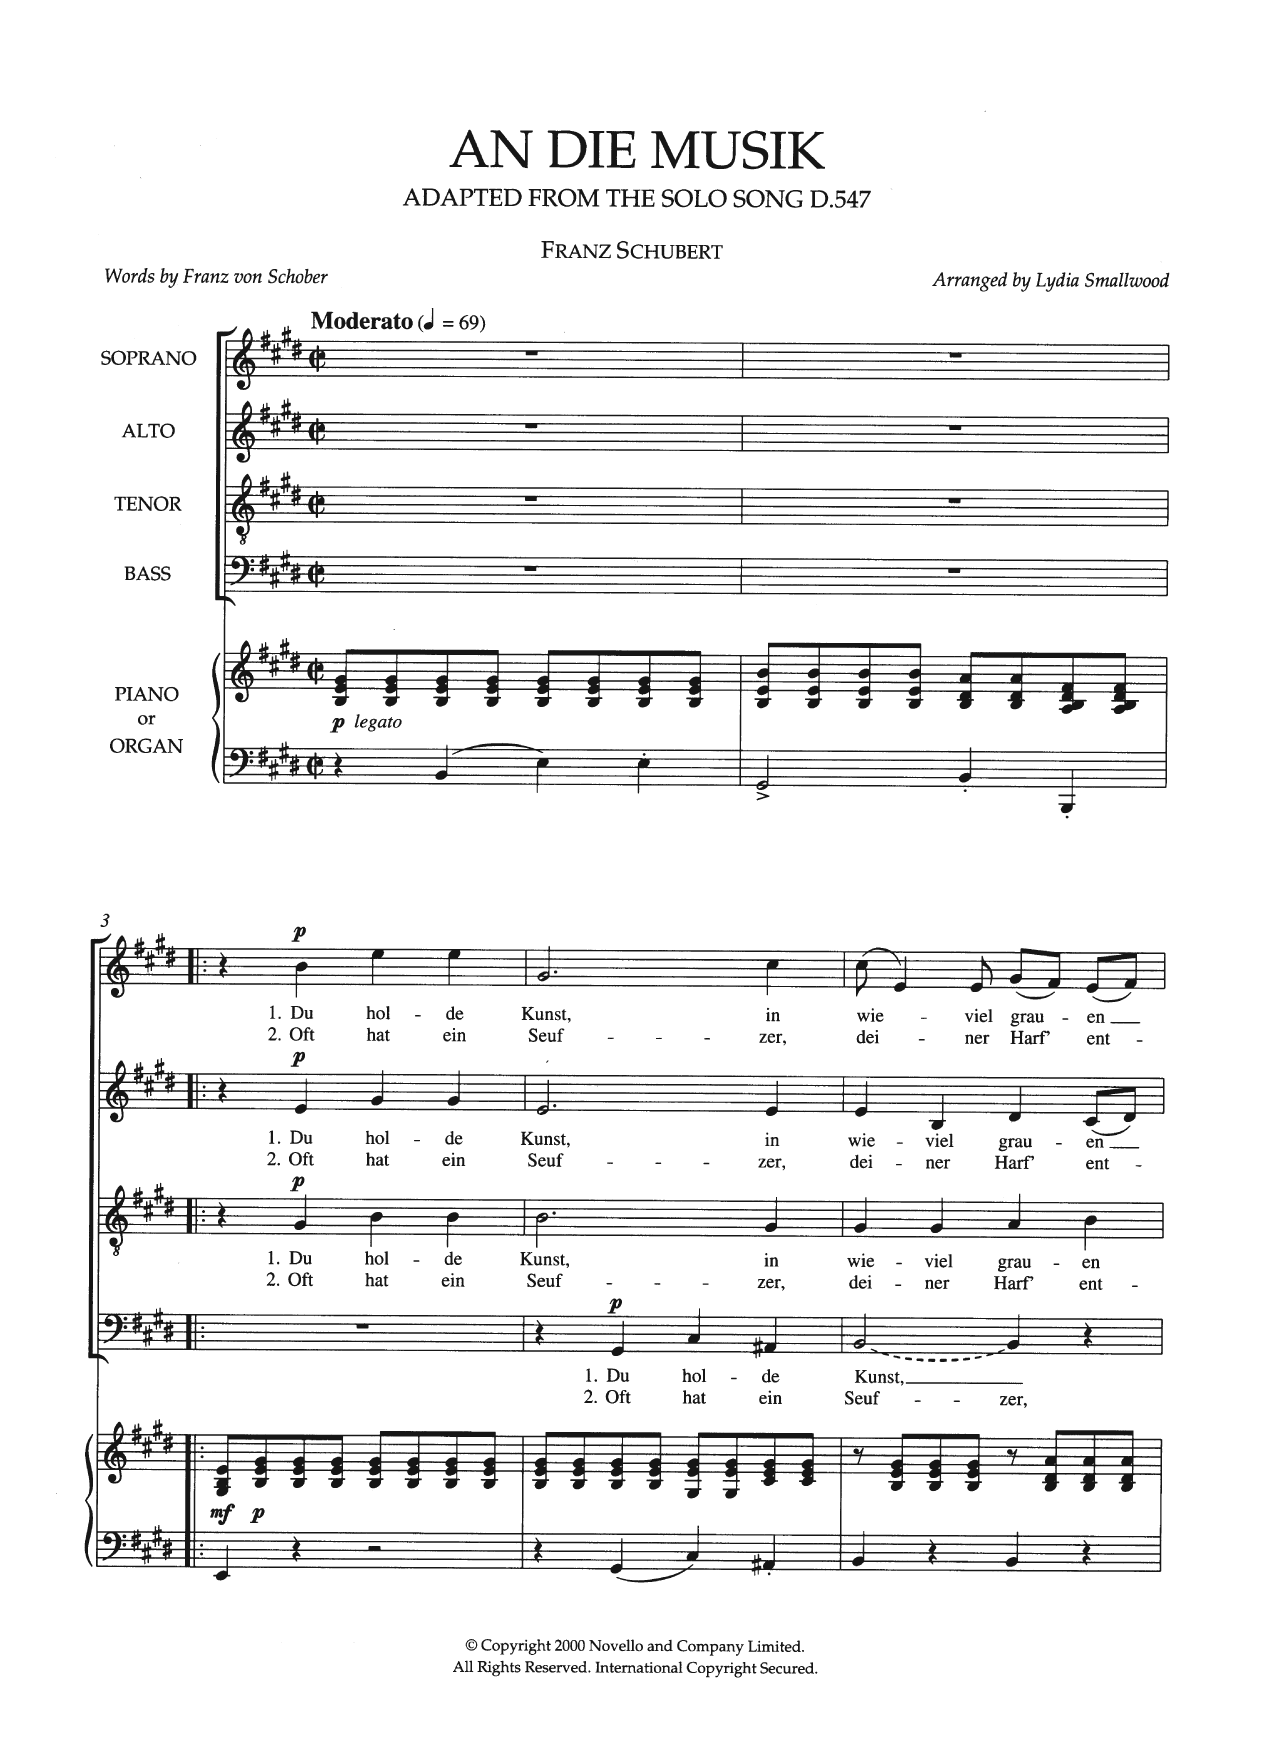 Download Franz Schubert An Die Musik (arr. Lydia Smallwood) Sheet Music